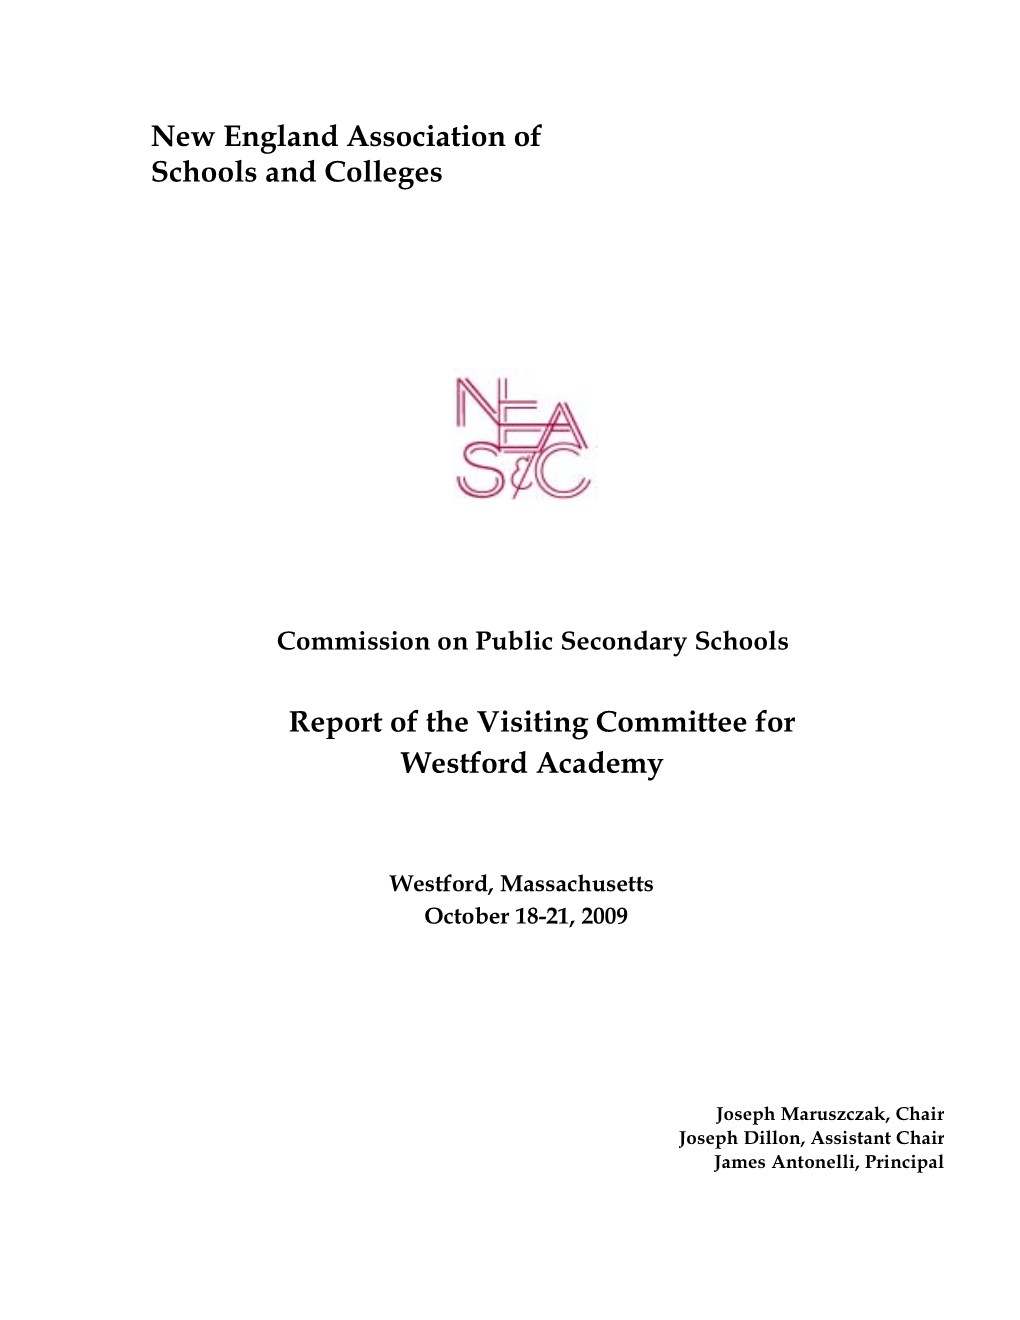 Westford Academy NEASC Report Draft Final